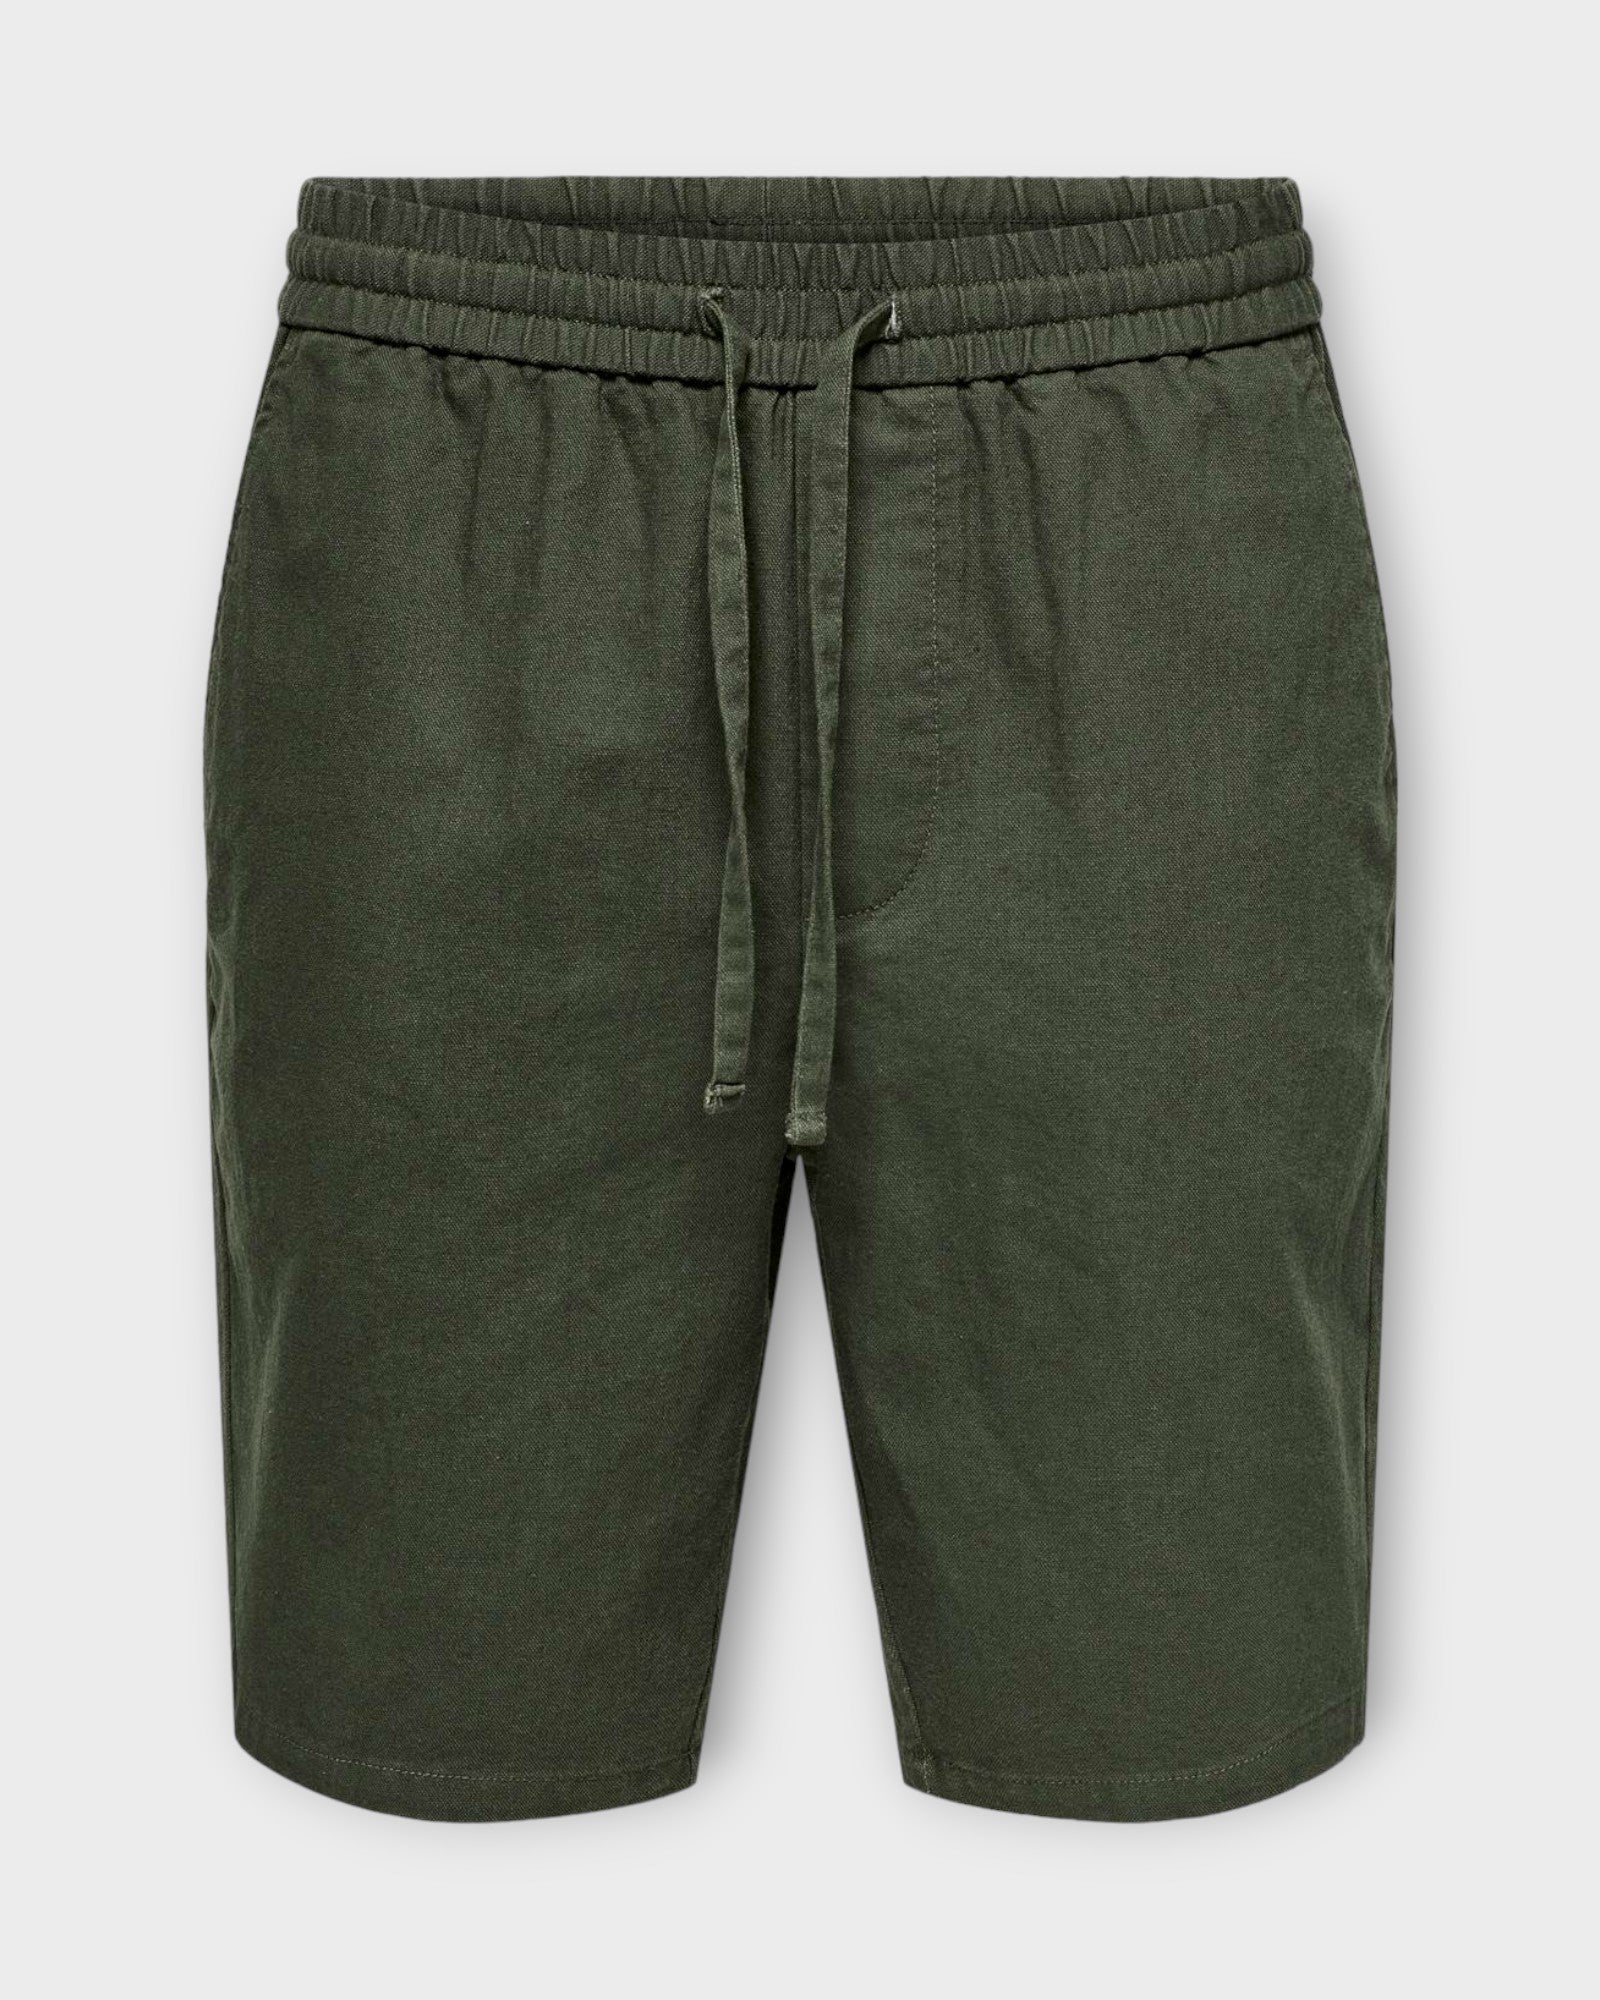 Linus 0007 Cot Lin Shorts Noos Olive Night fra Only and Sons. Army grønne hør shorts til mænd. Her set forfra.